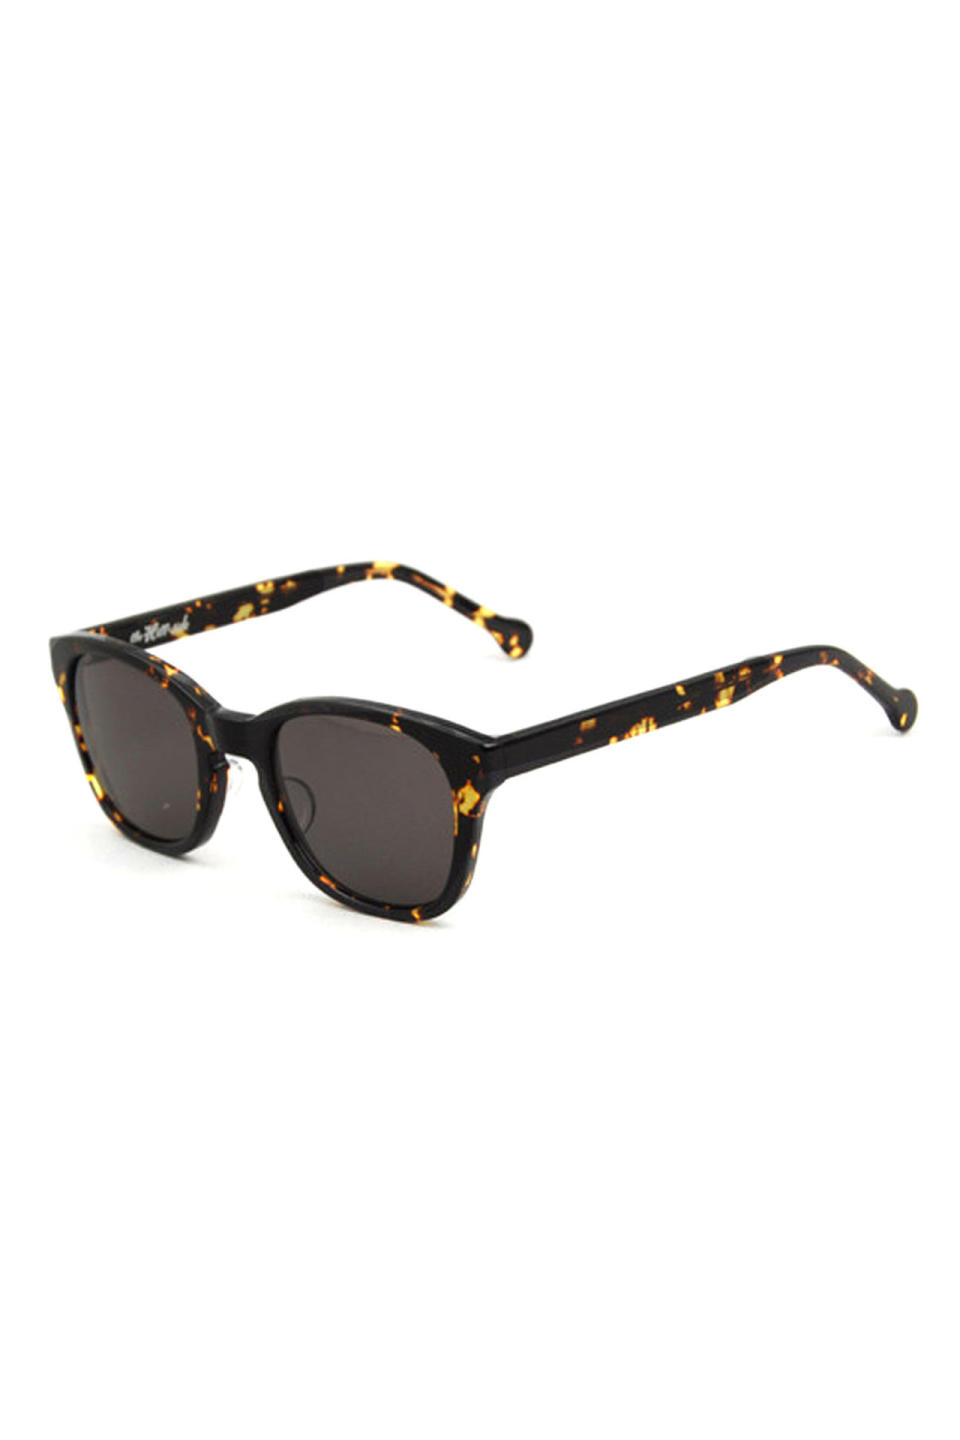 The Hillside SU1-02 Sunglasses